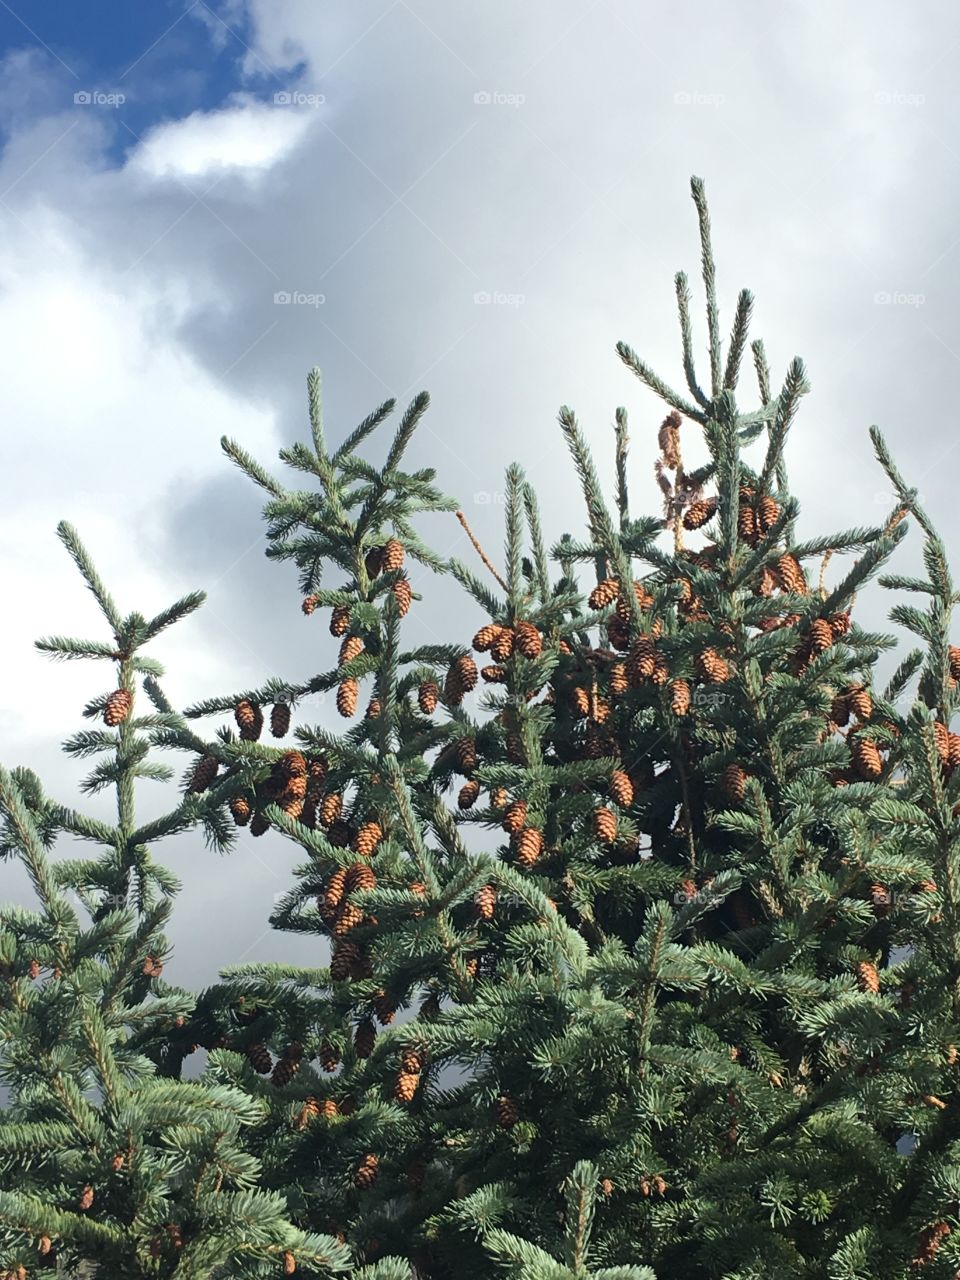 Pine cones in bloom